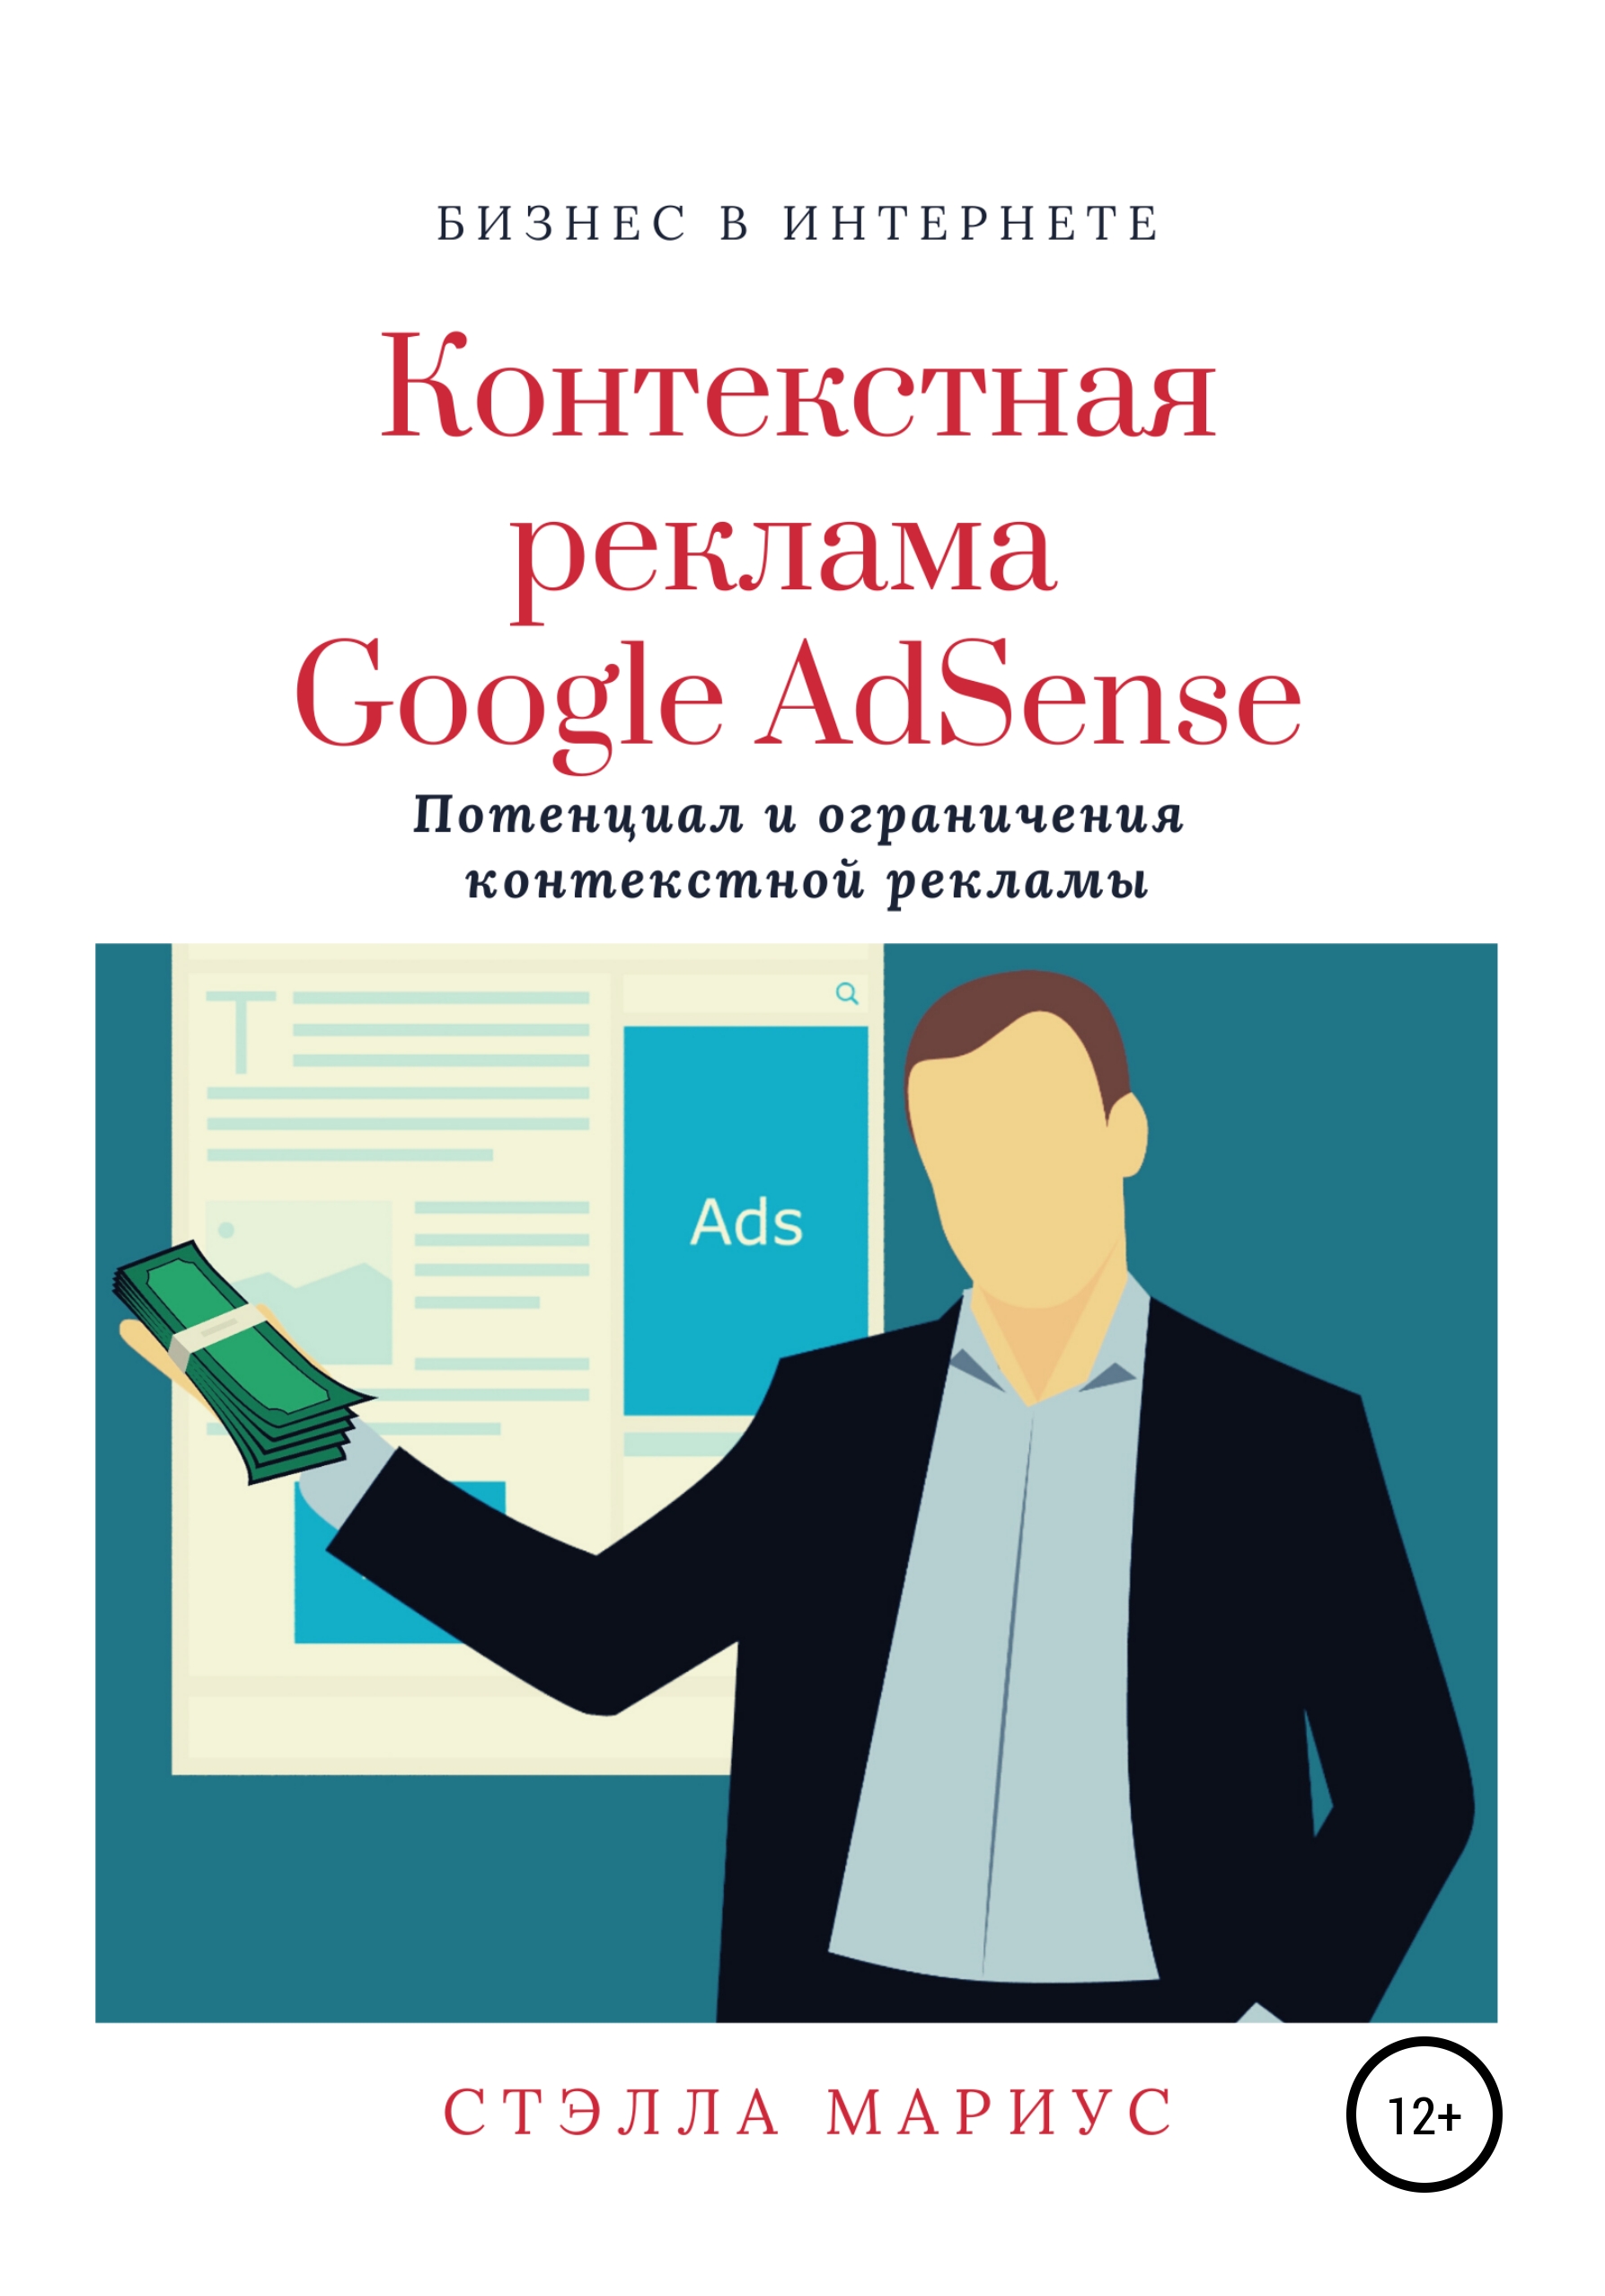 Книга  Контекстная реклама Google AdSense созданная Стэлла Мариус может относится к жанру интернет, интернет-маркетинг, реклама. Стоимость электронной книги Контекстная реклама Google AdSense с идентификатором 49764376 составляет 99.90 руб.